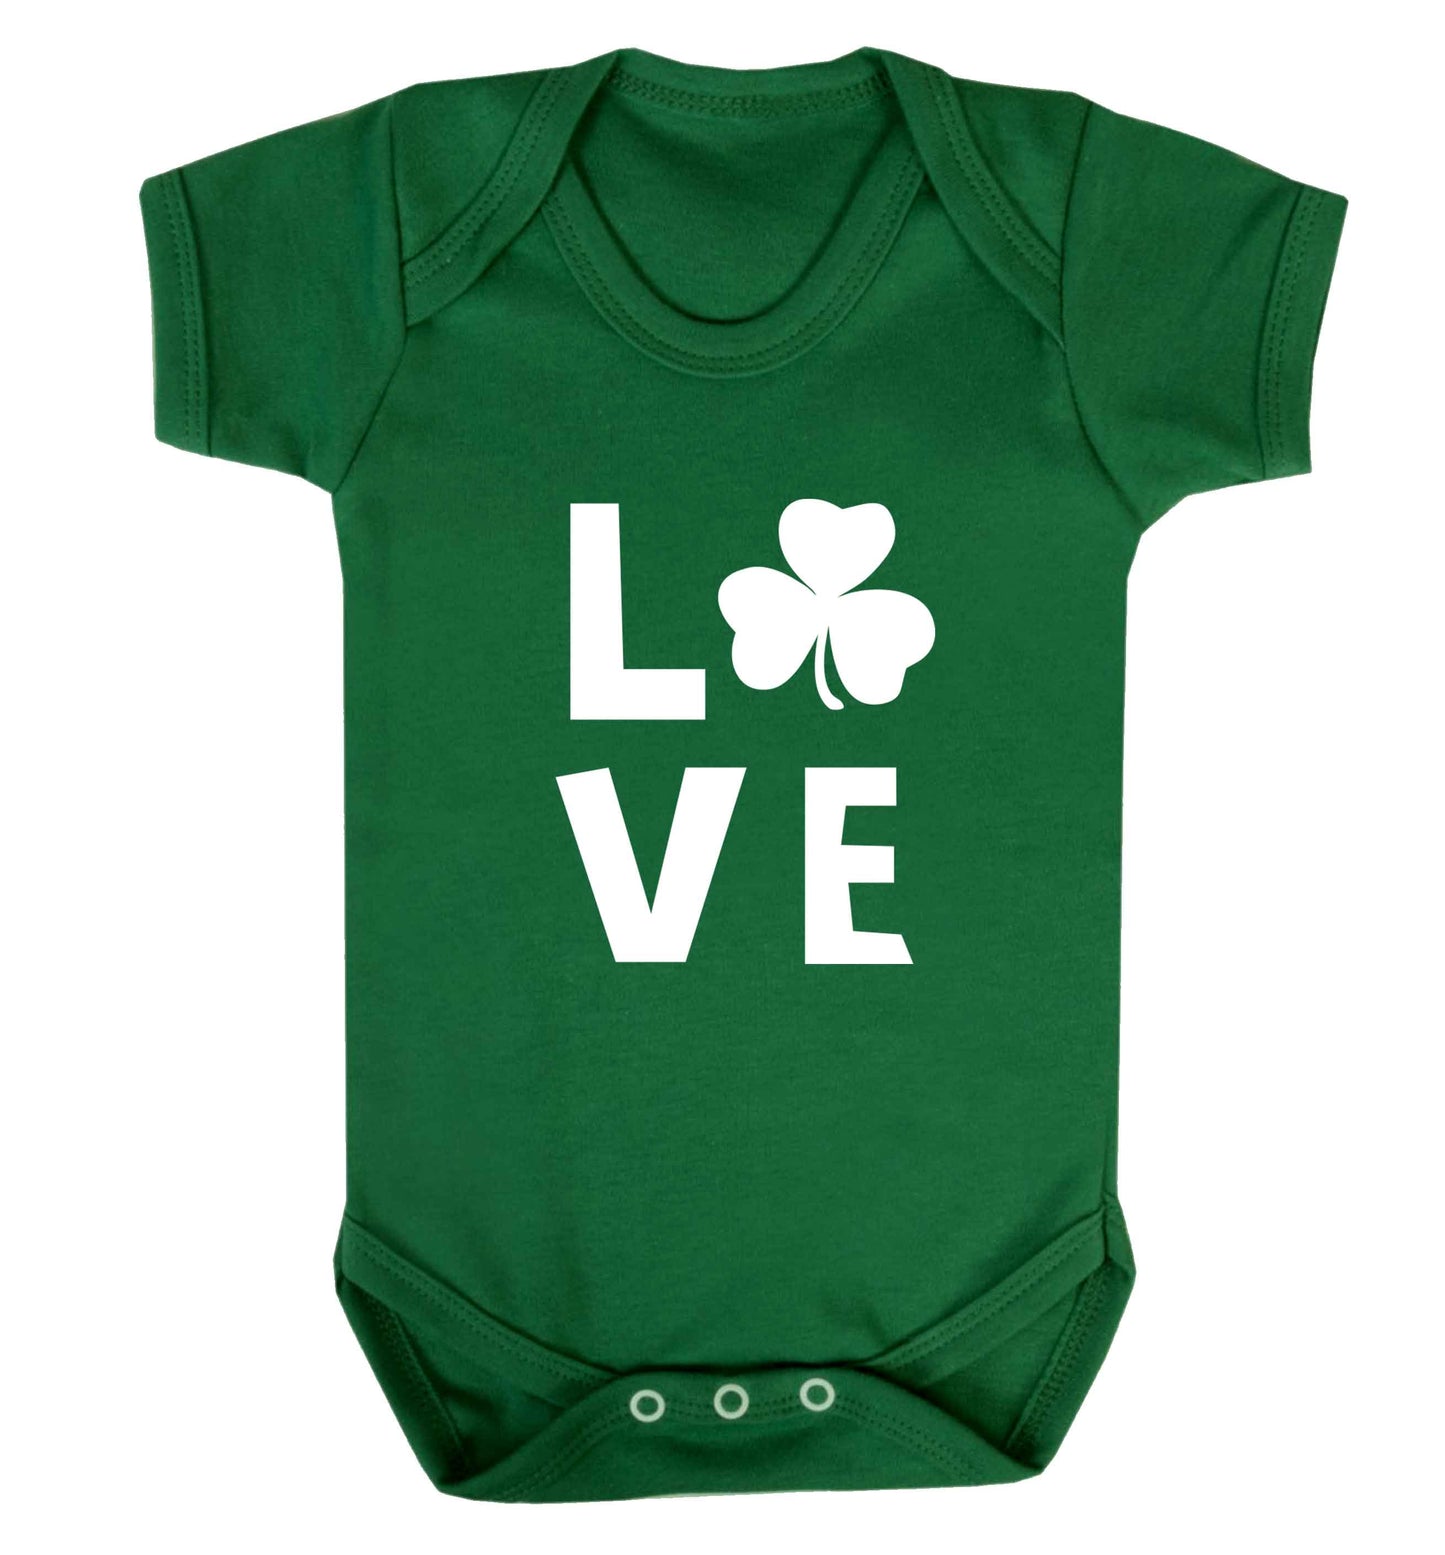 Shamrock love baby vest green 18-24 months